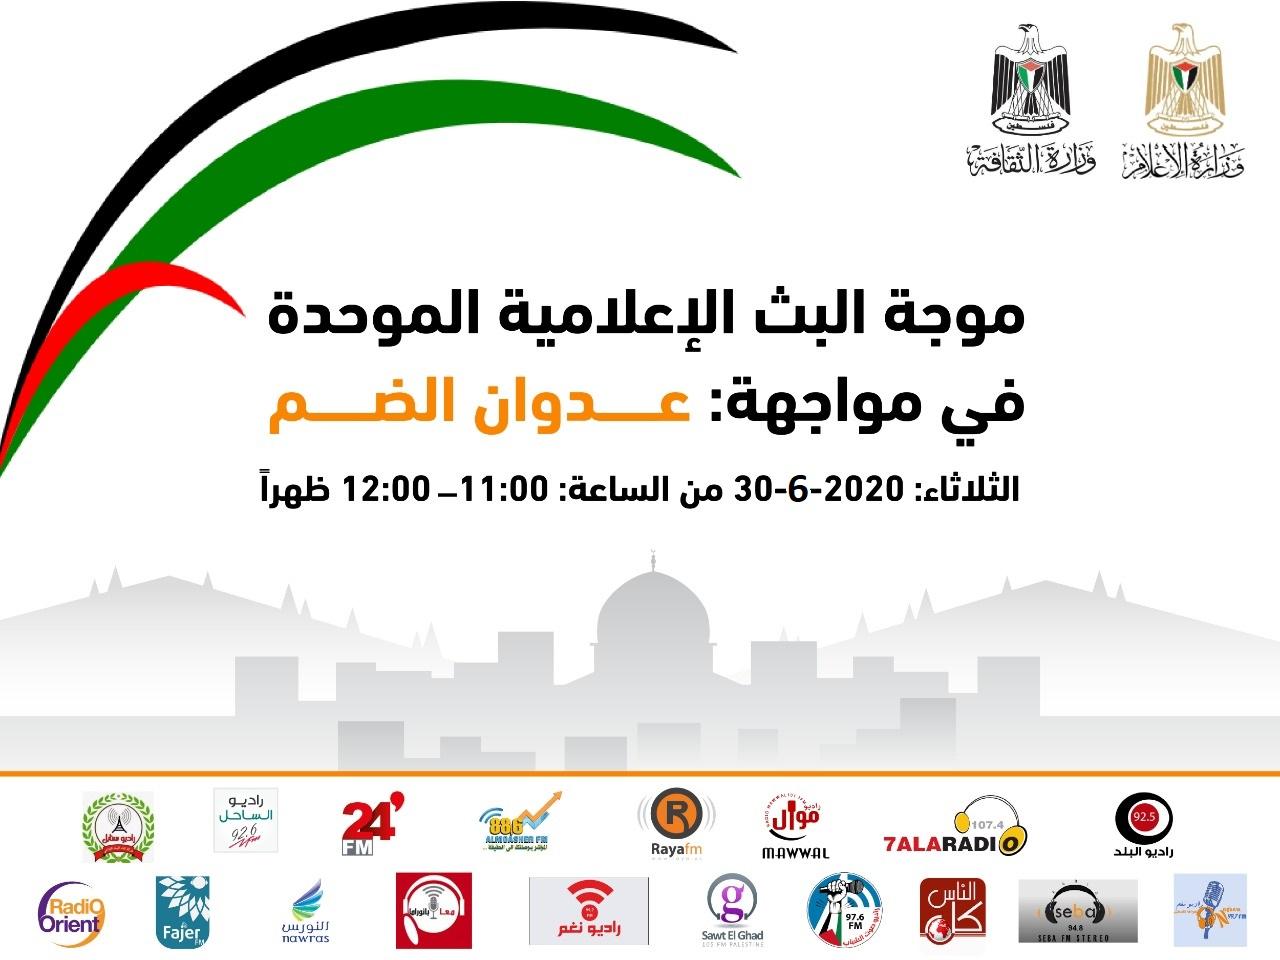   اطلاق موجة بث موحدة غدا تحت عنوان «في مواجهة عدوان الضم الاحتلالي»